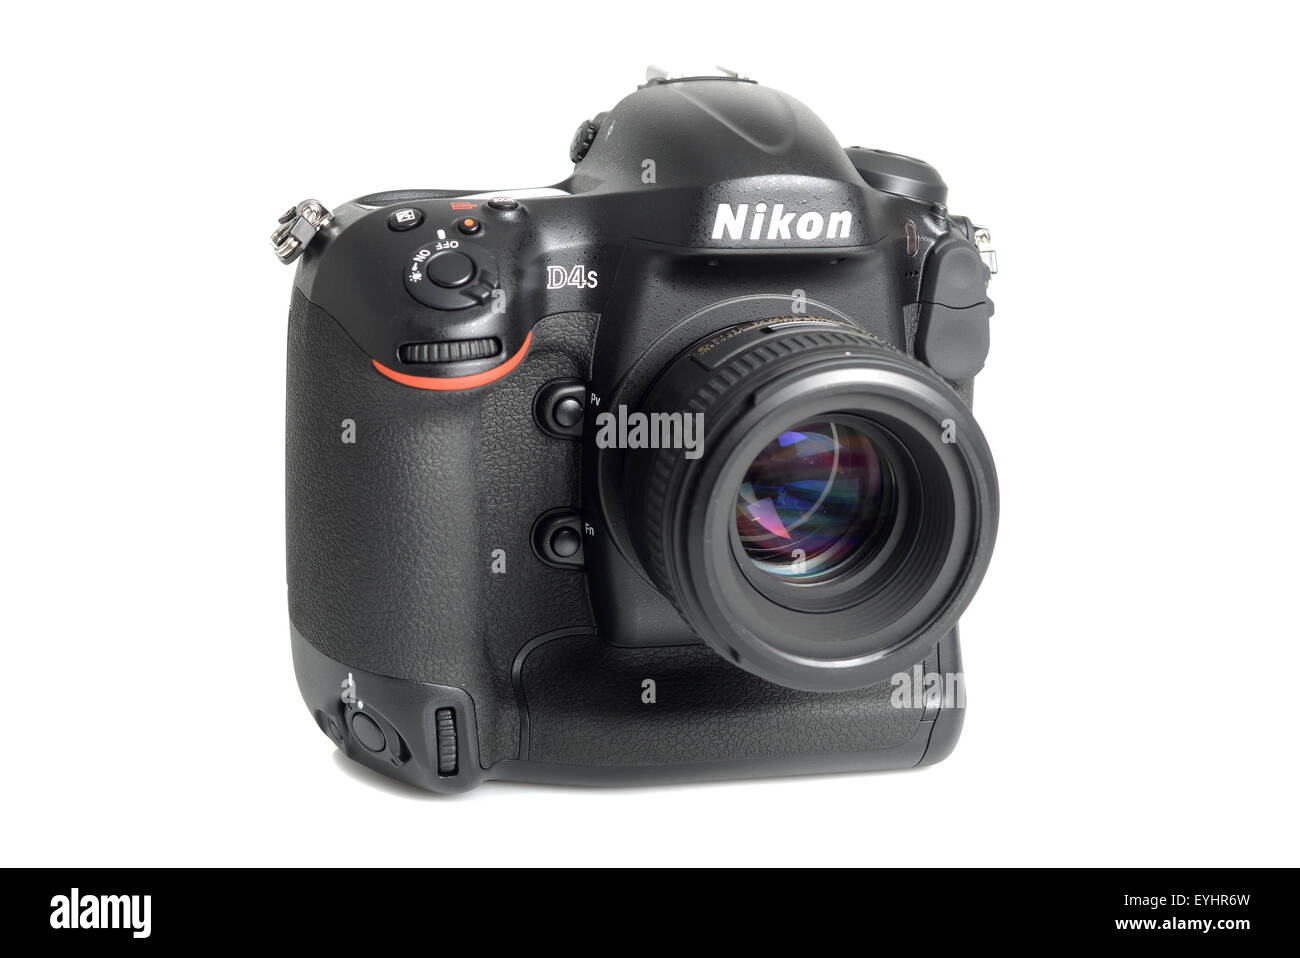 Nikon D4s camera on white background Stock Photo